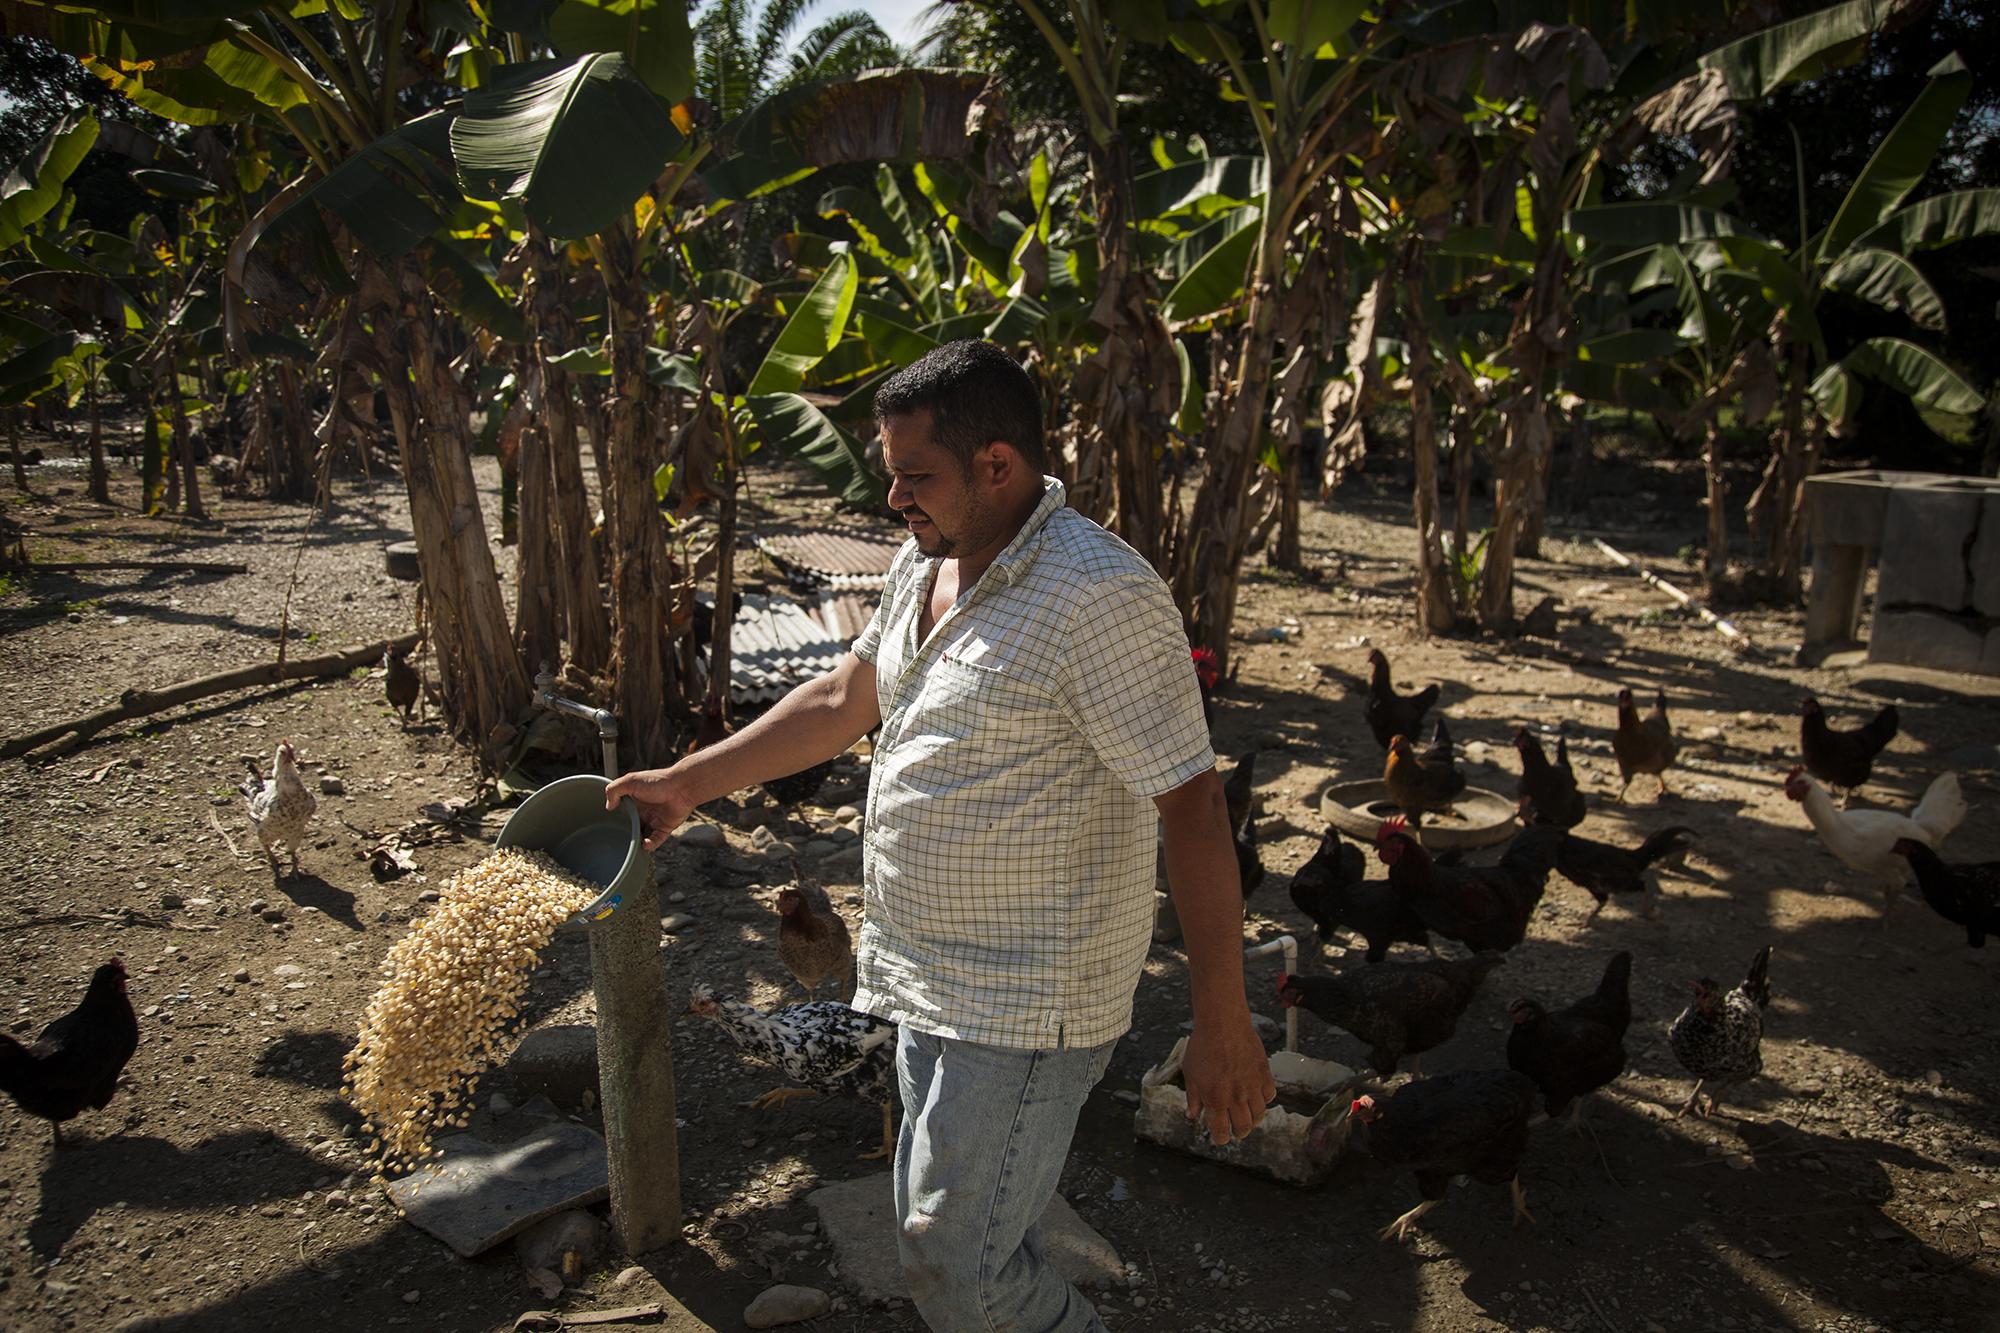 Elías Espinoza da de comer a sus gallinas, en su vivienda sumergida en un mar de palma africana, cerca de la fabrica CAICESA, propiedad de Grupo Jaremar./ Foto El Faro: Víctor Peña